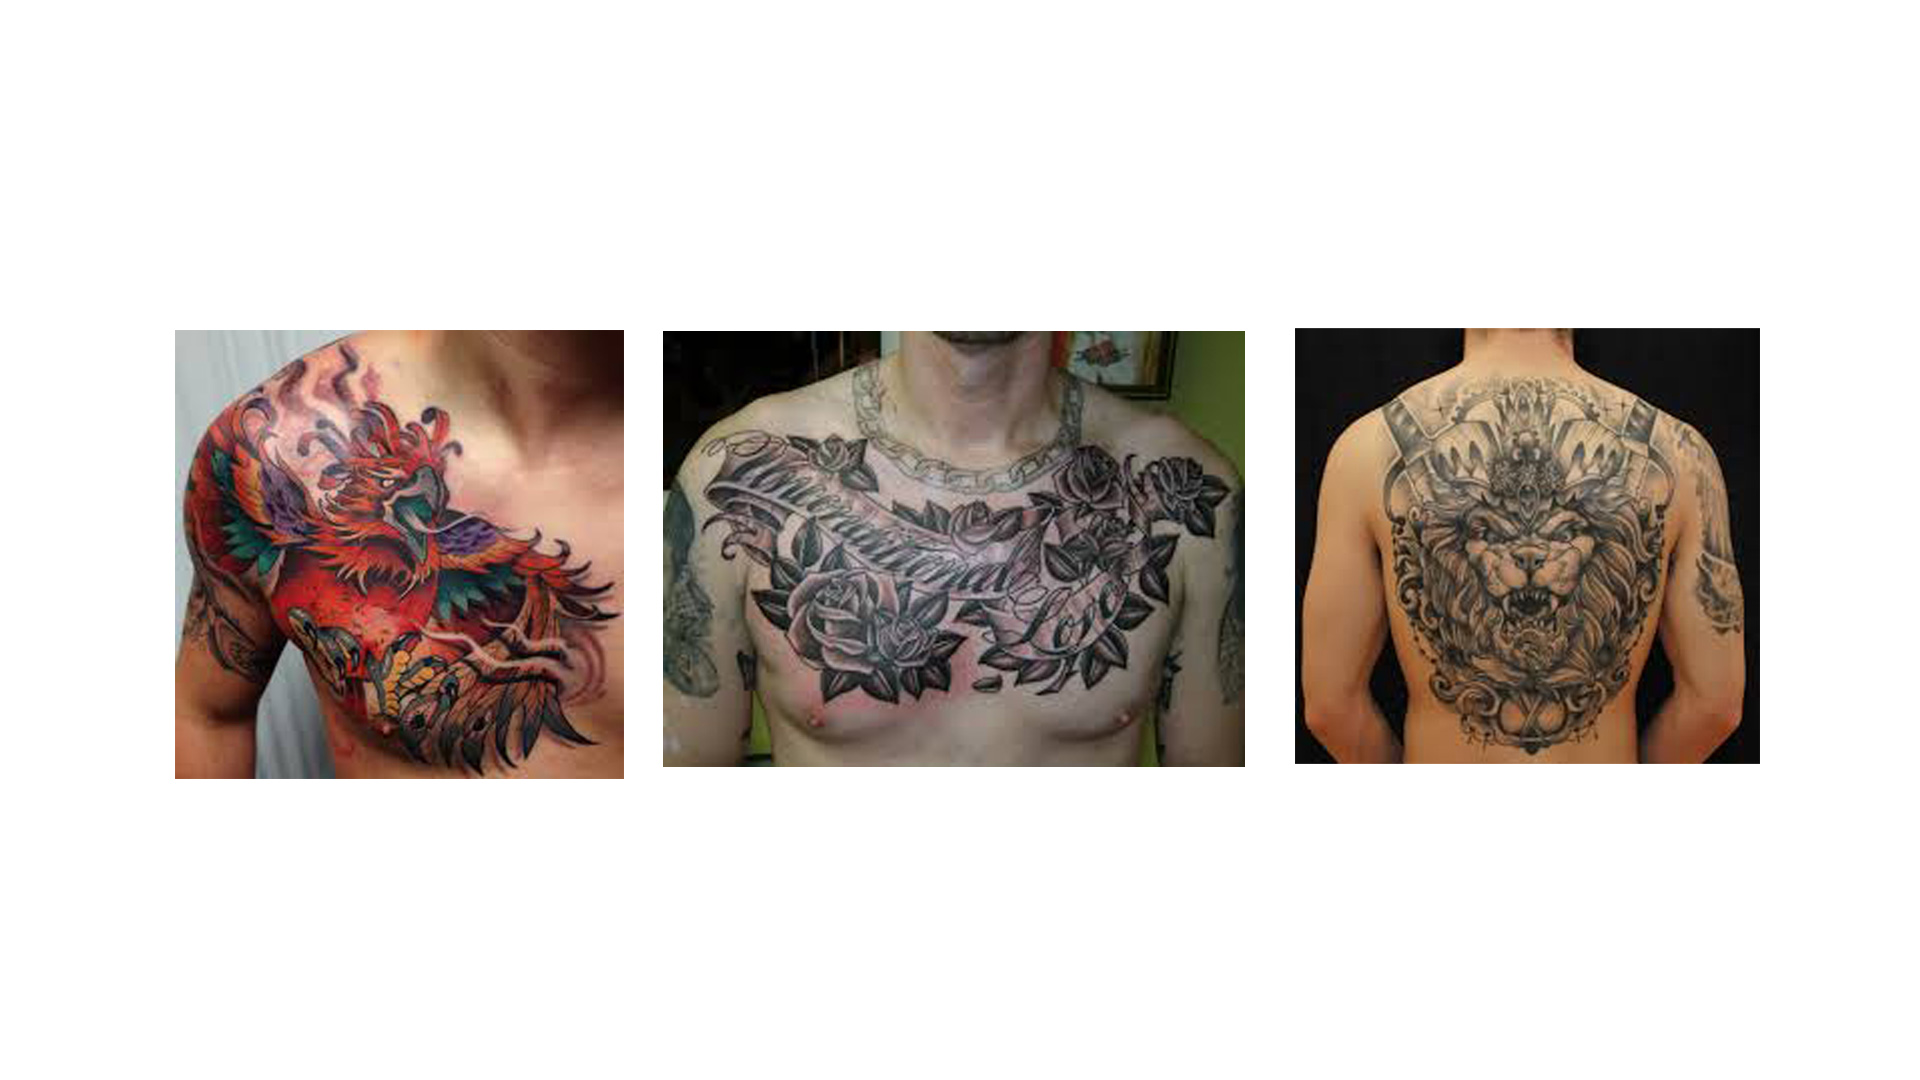 El incremento de personas tatuadas hacen pensar que no es algo doloroso, y esto solo dependerá de la zona y tú tolerancia